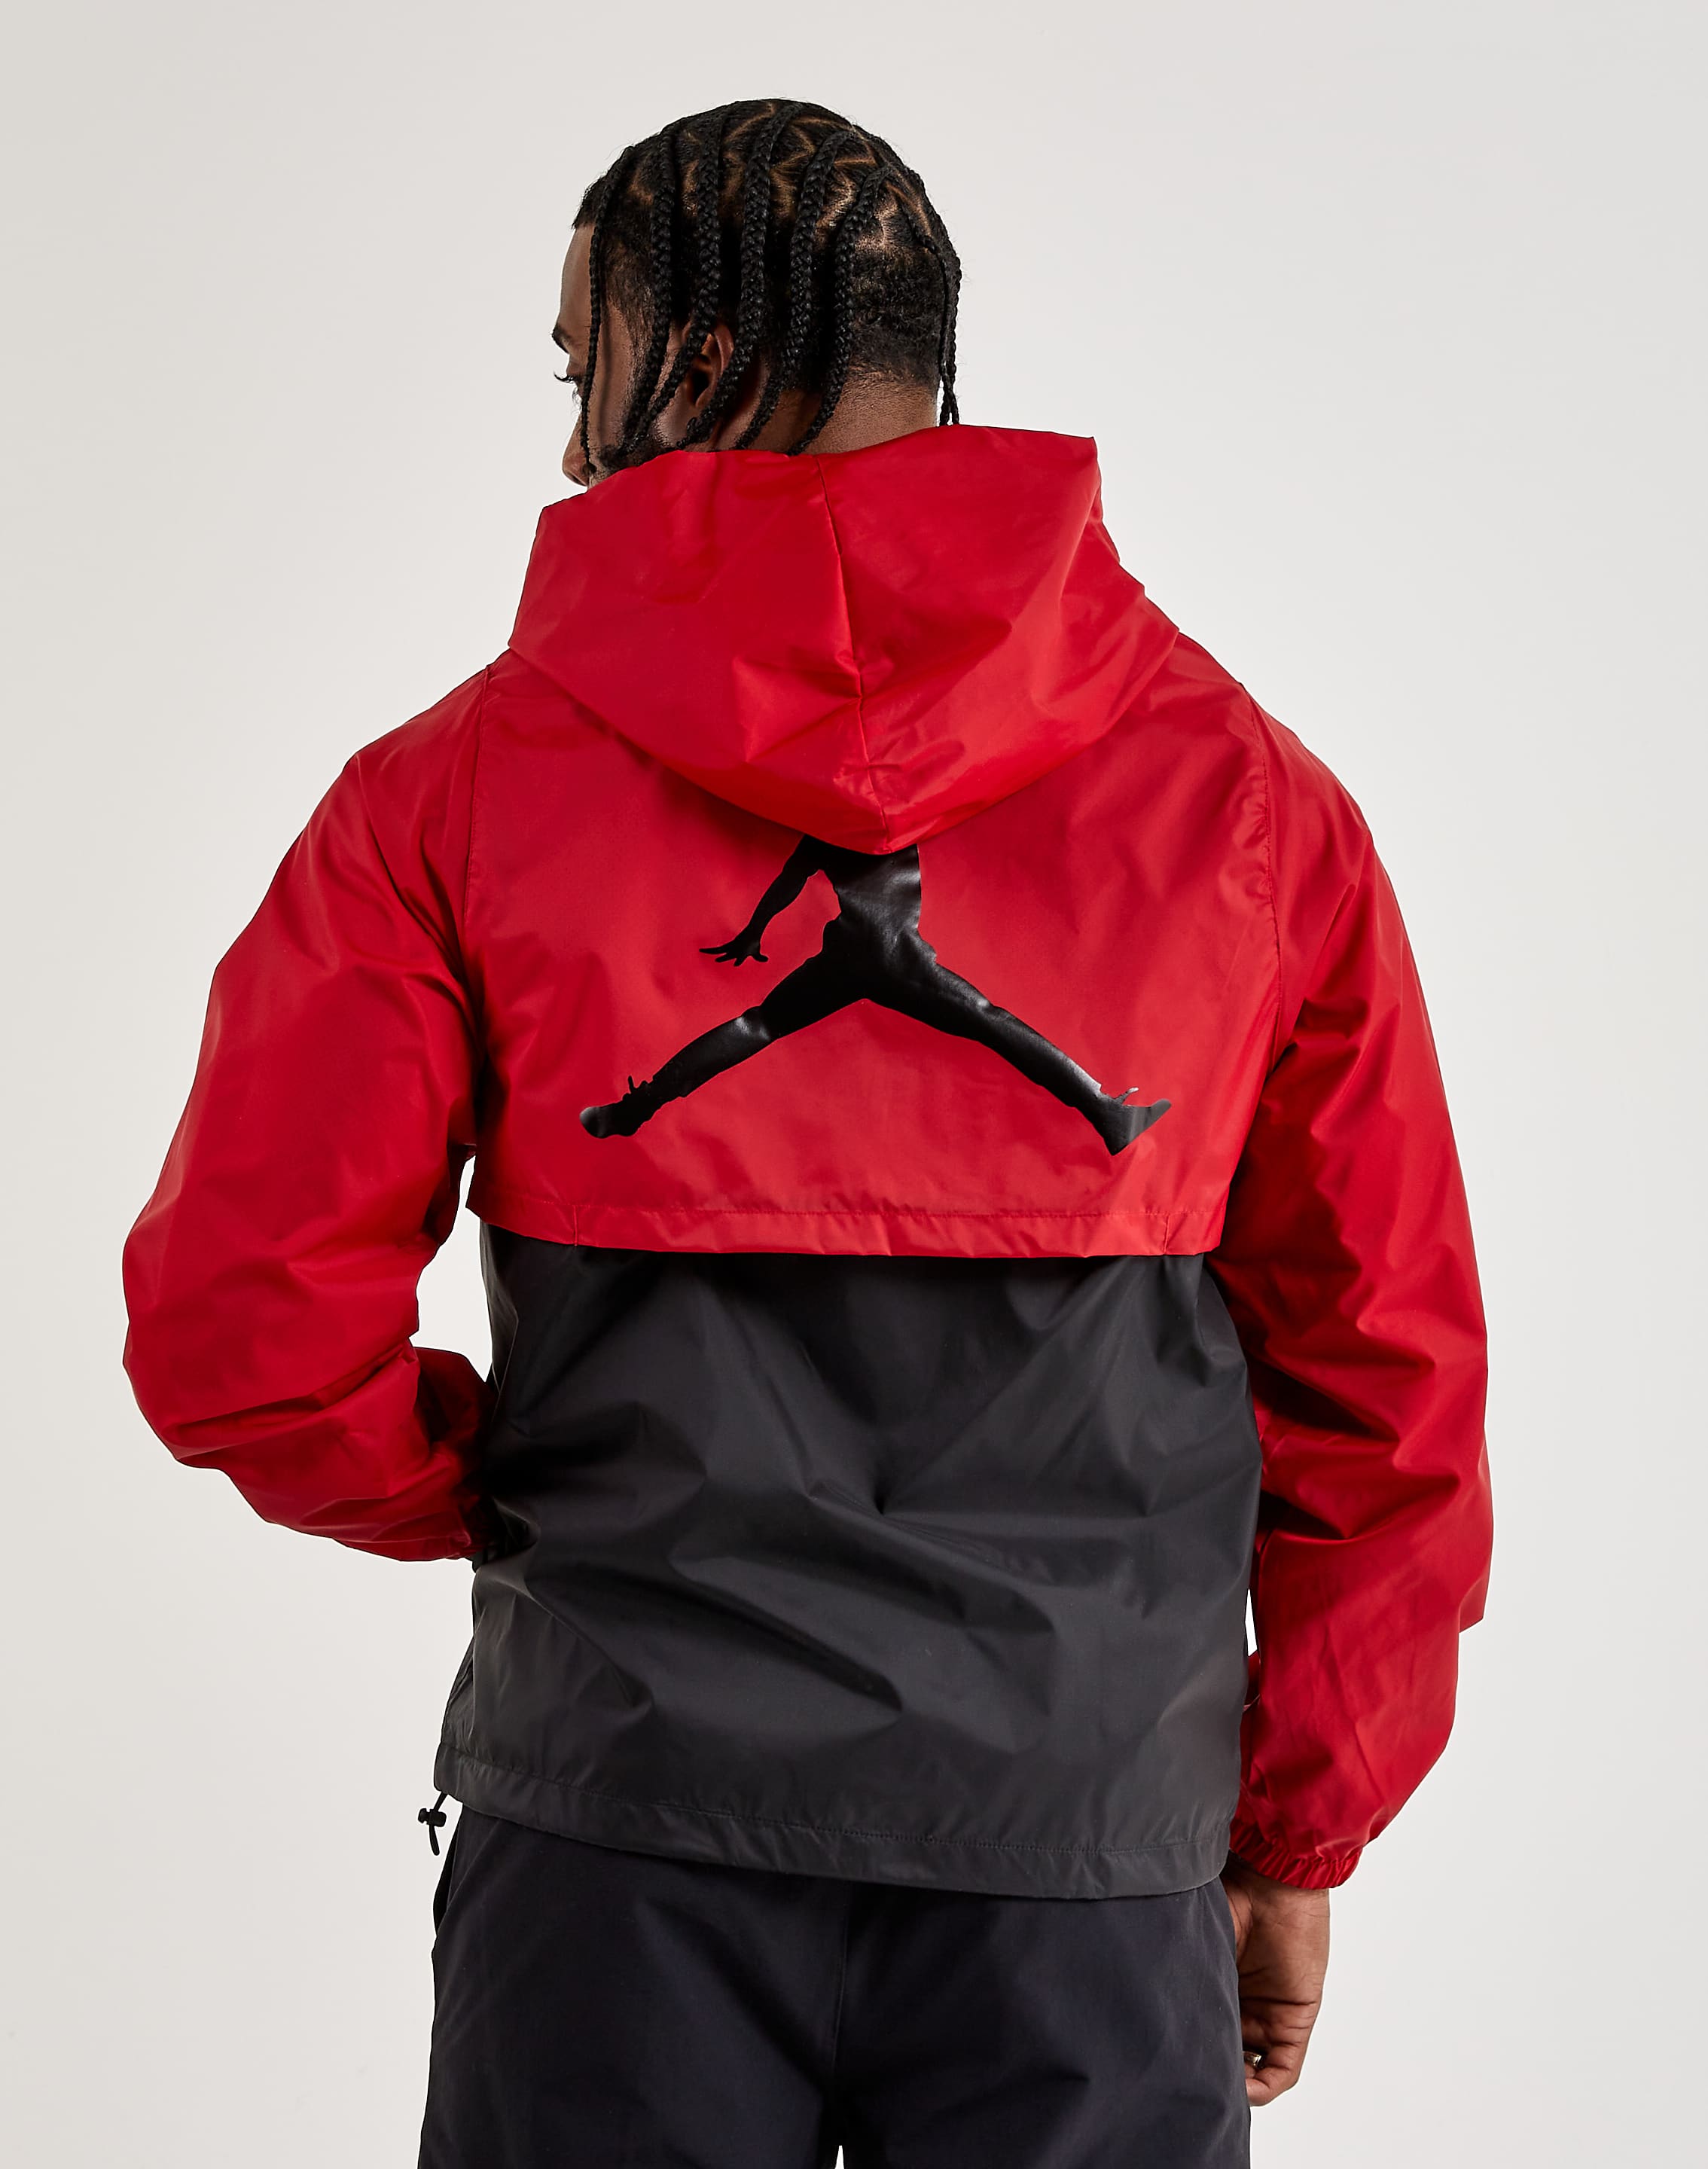 Jordan Essentials Woven Jacket – DTLR